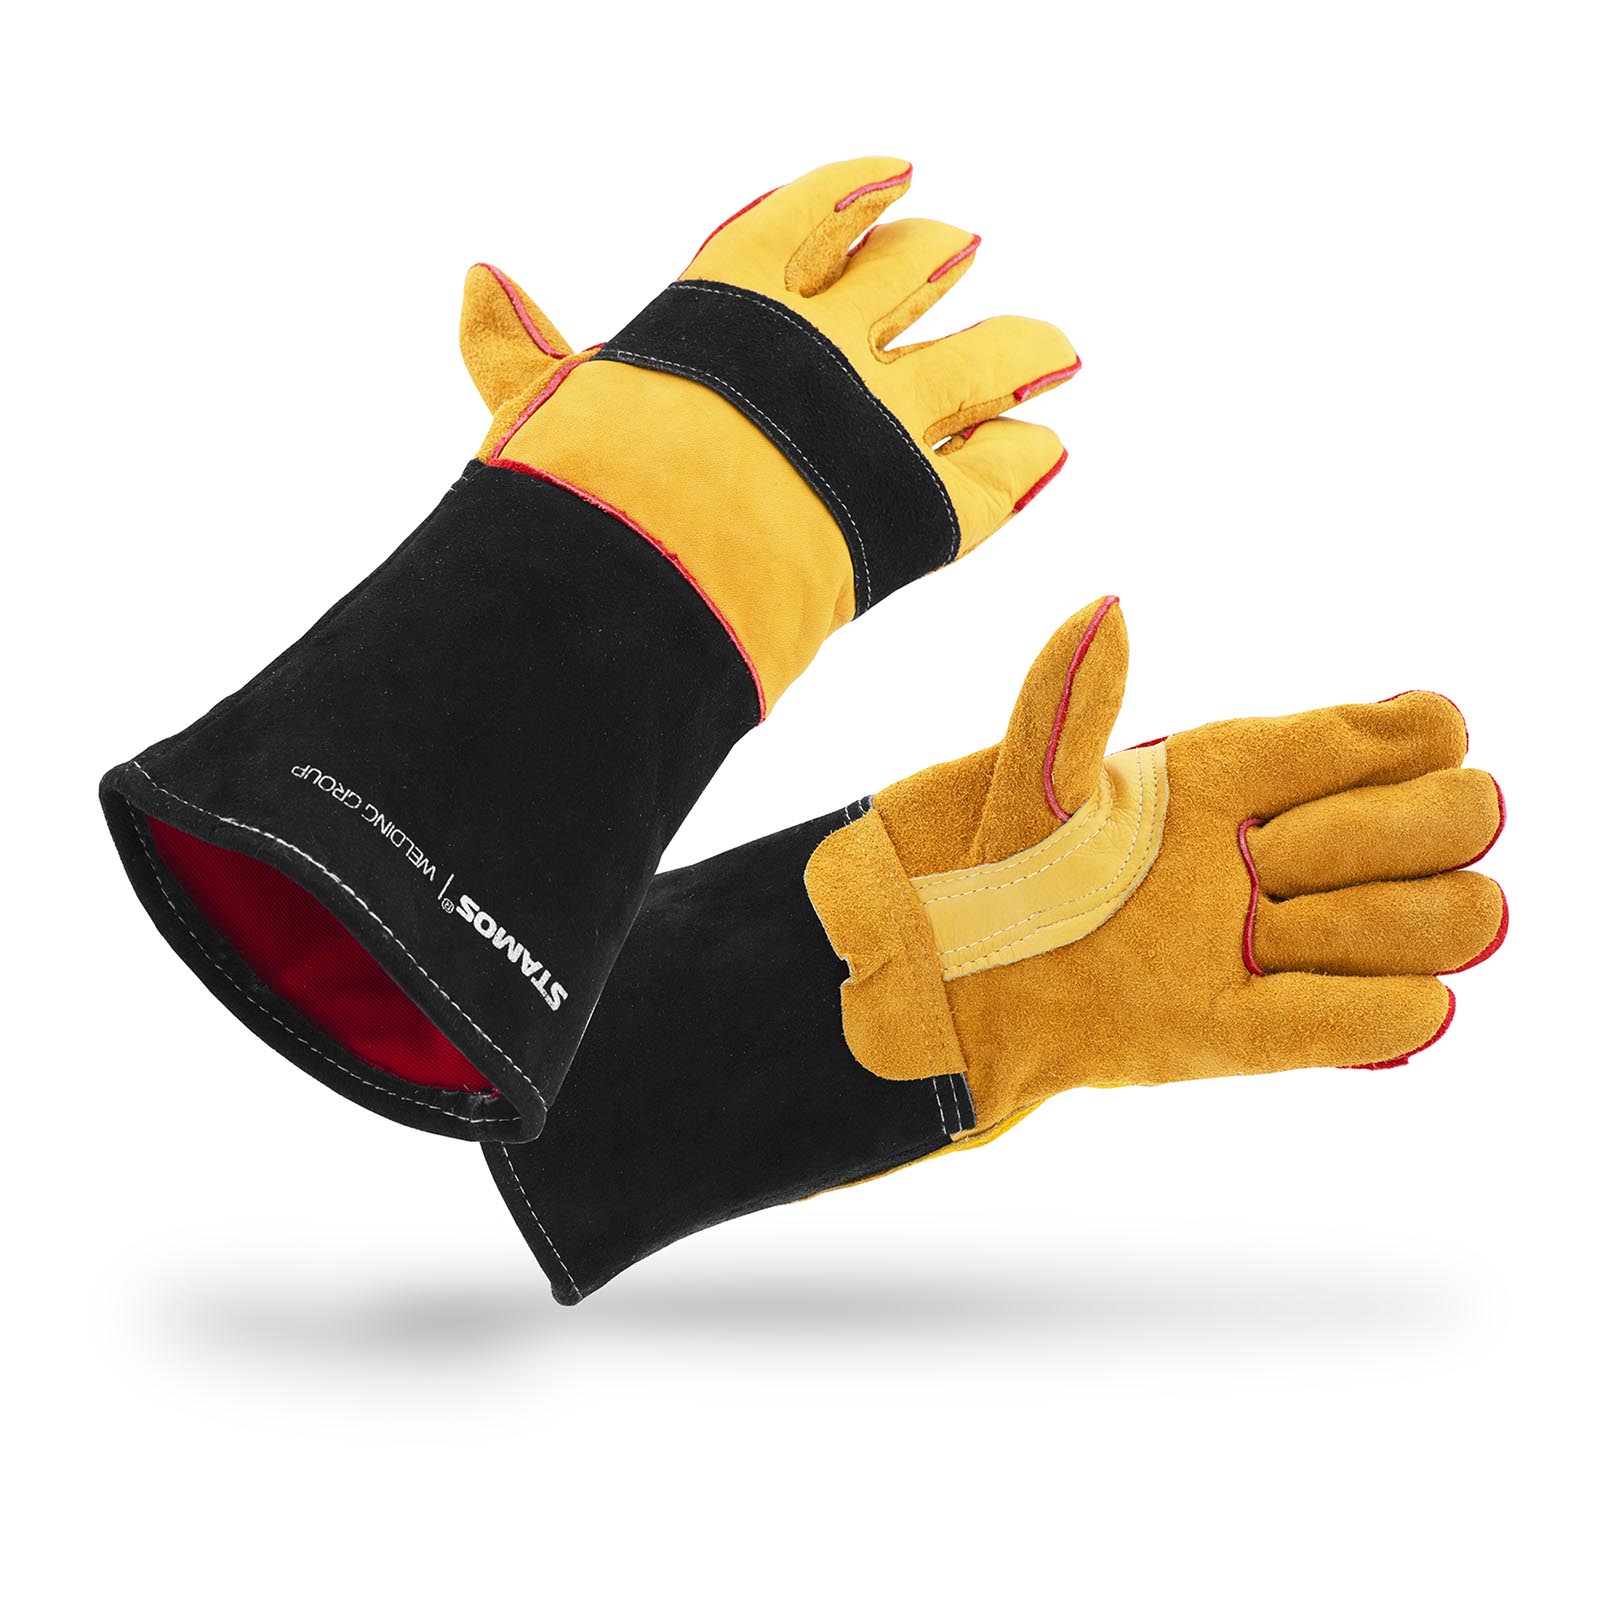 Varilske rokavice - velikost XL